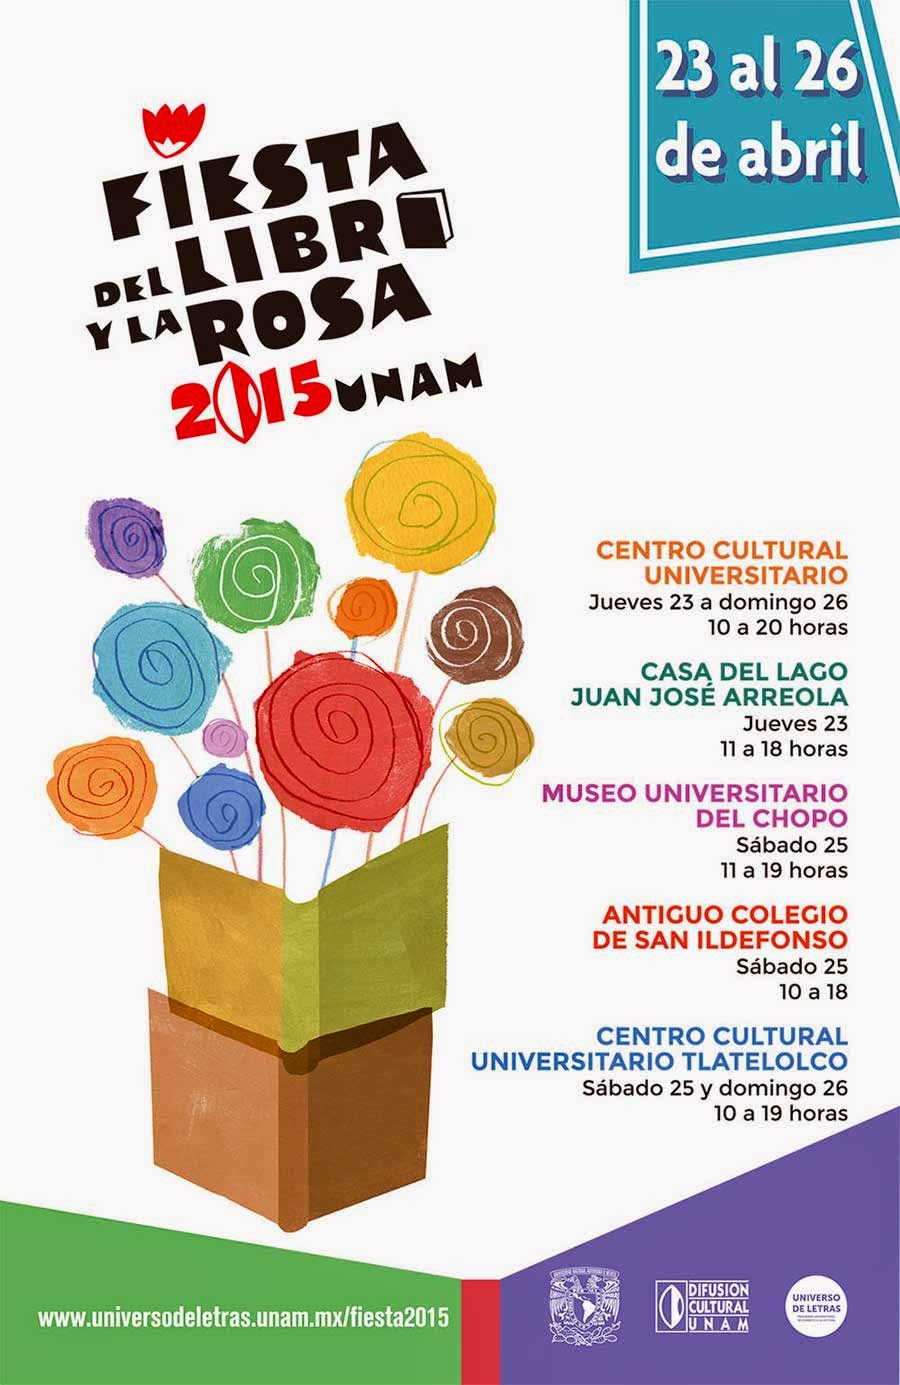 La Fiesta del Libro y la Rosa 2015 de la UNAM del 23 al 26 de Abril